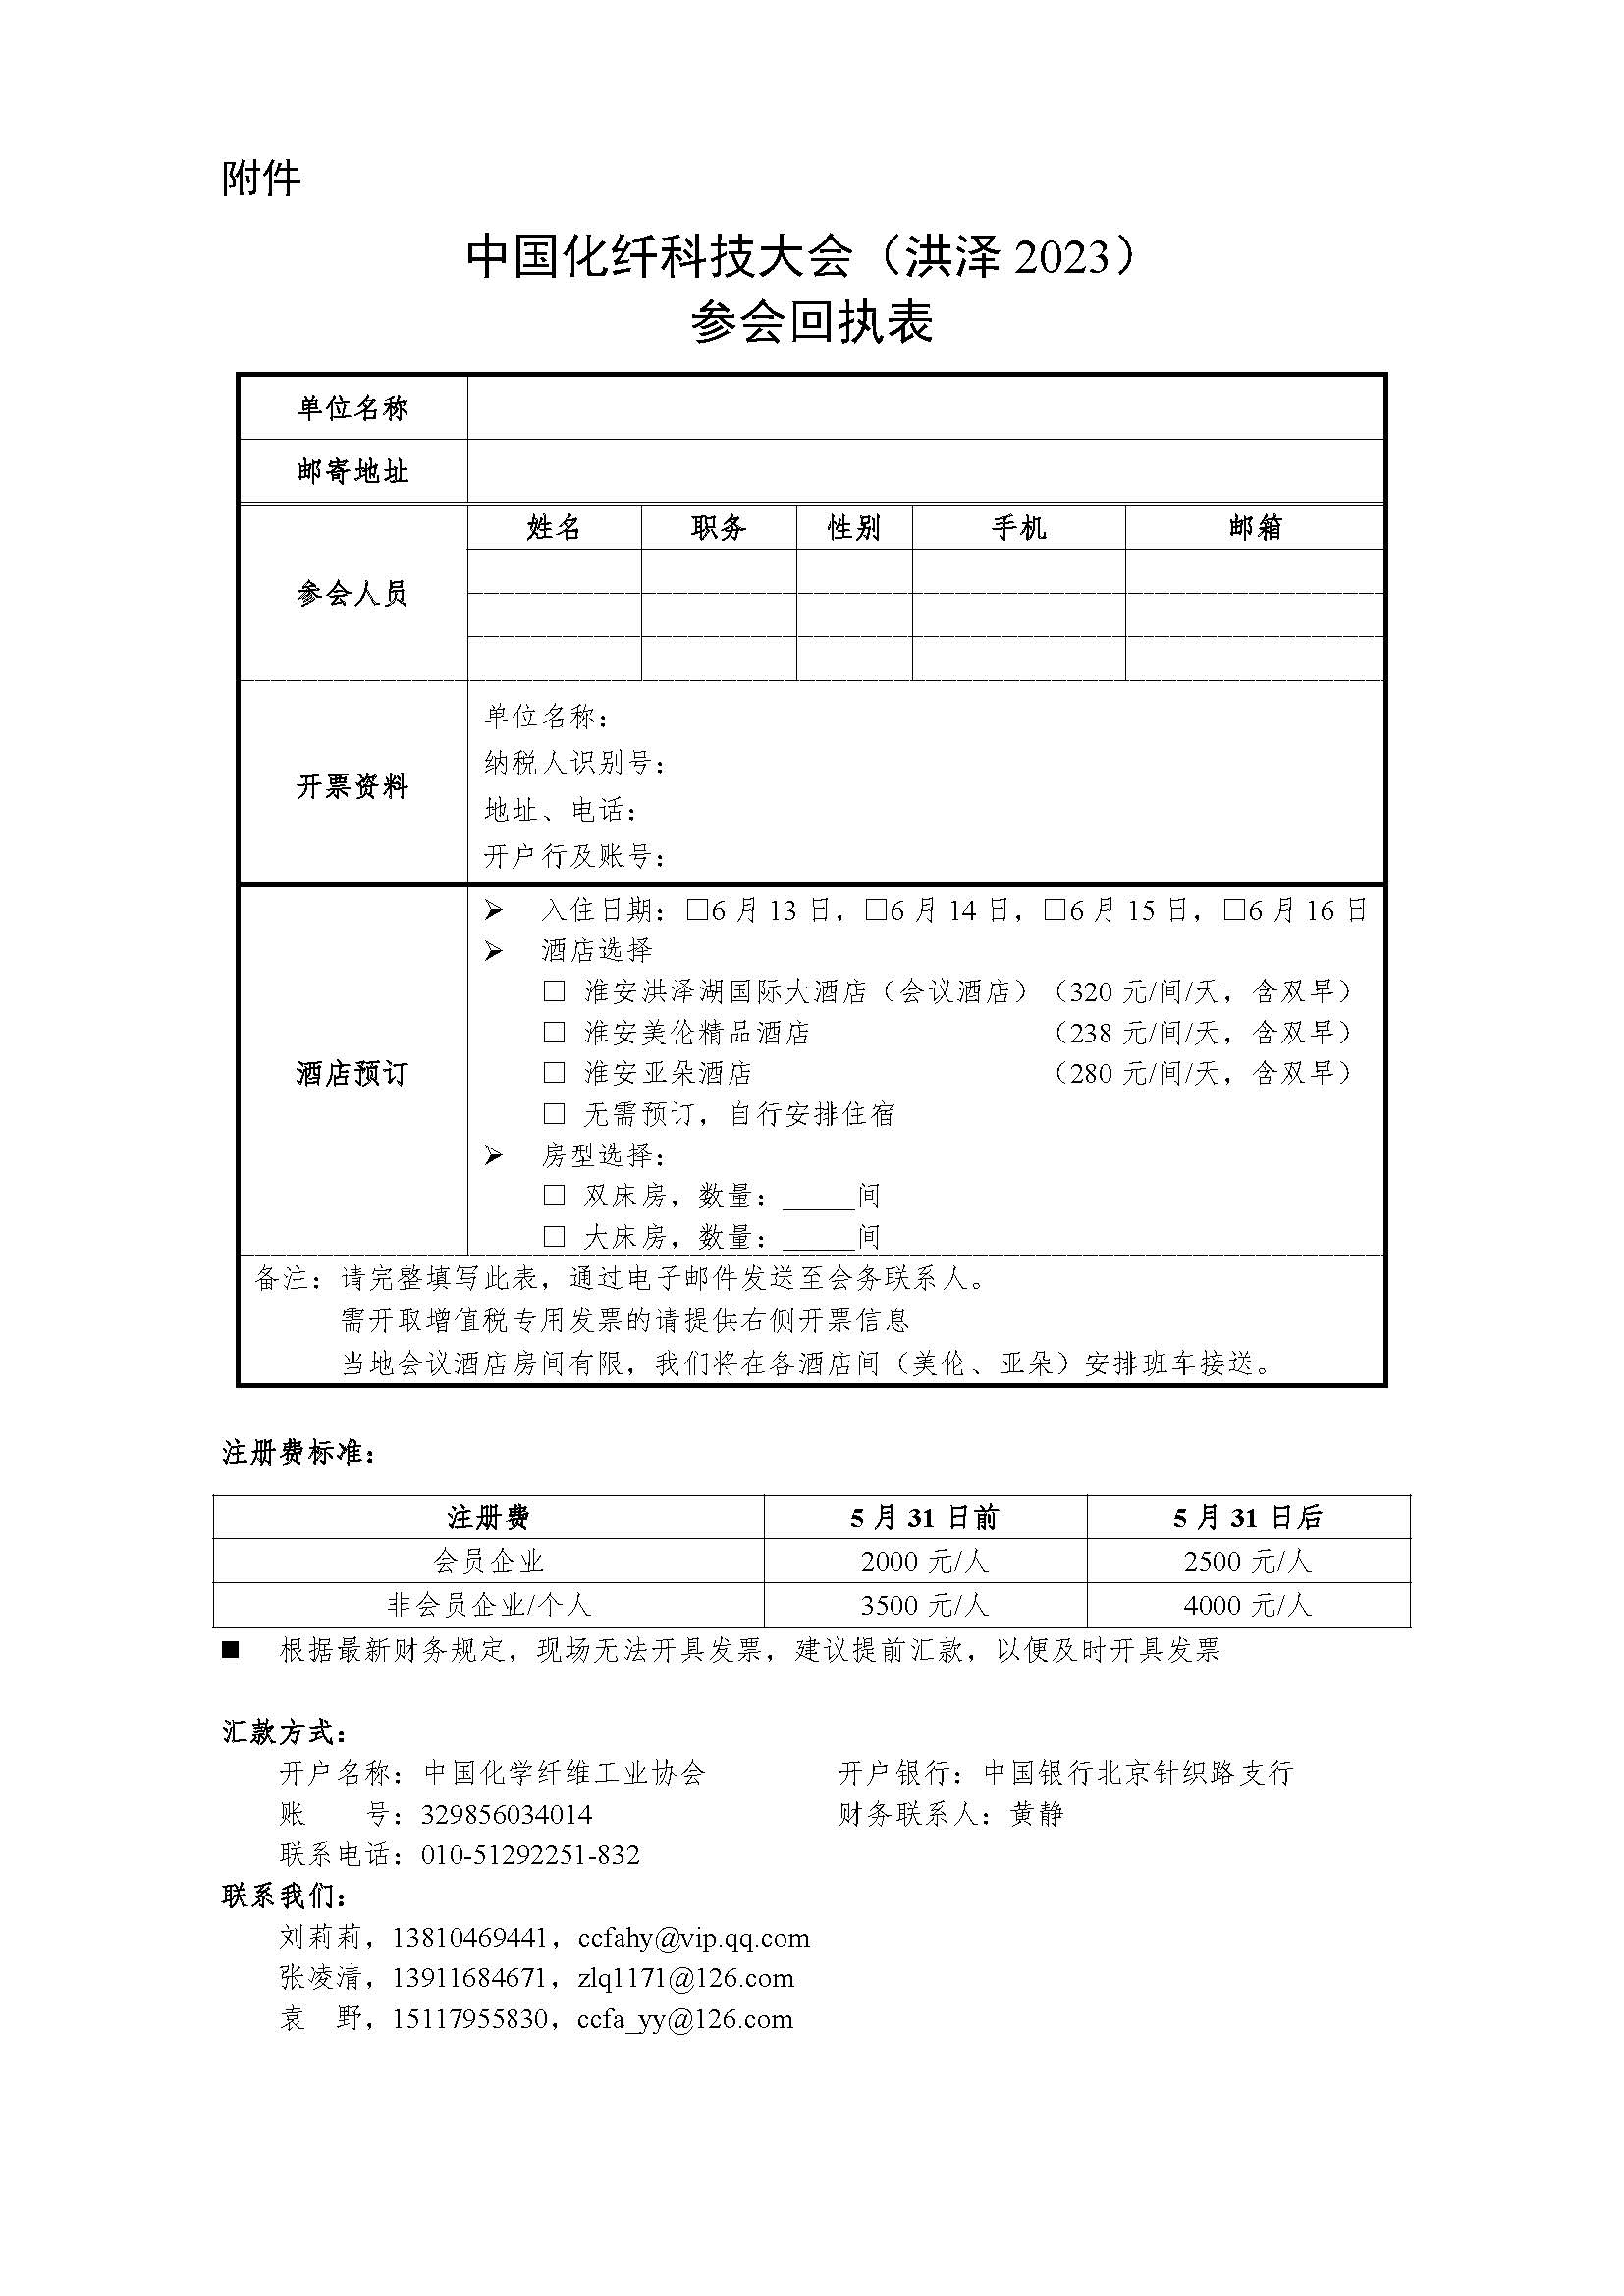 关于召开中国化纤科技大会（洪泽2023）的通知（0518红头版）(1)_页面_4.jpg